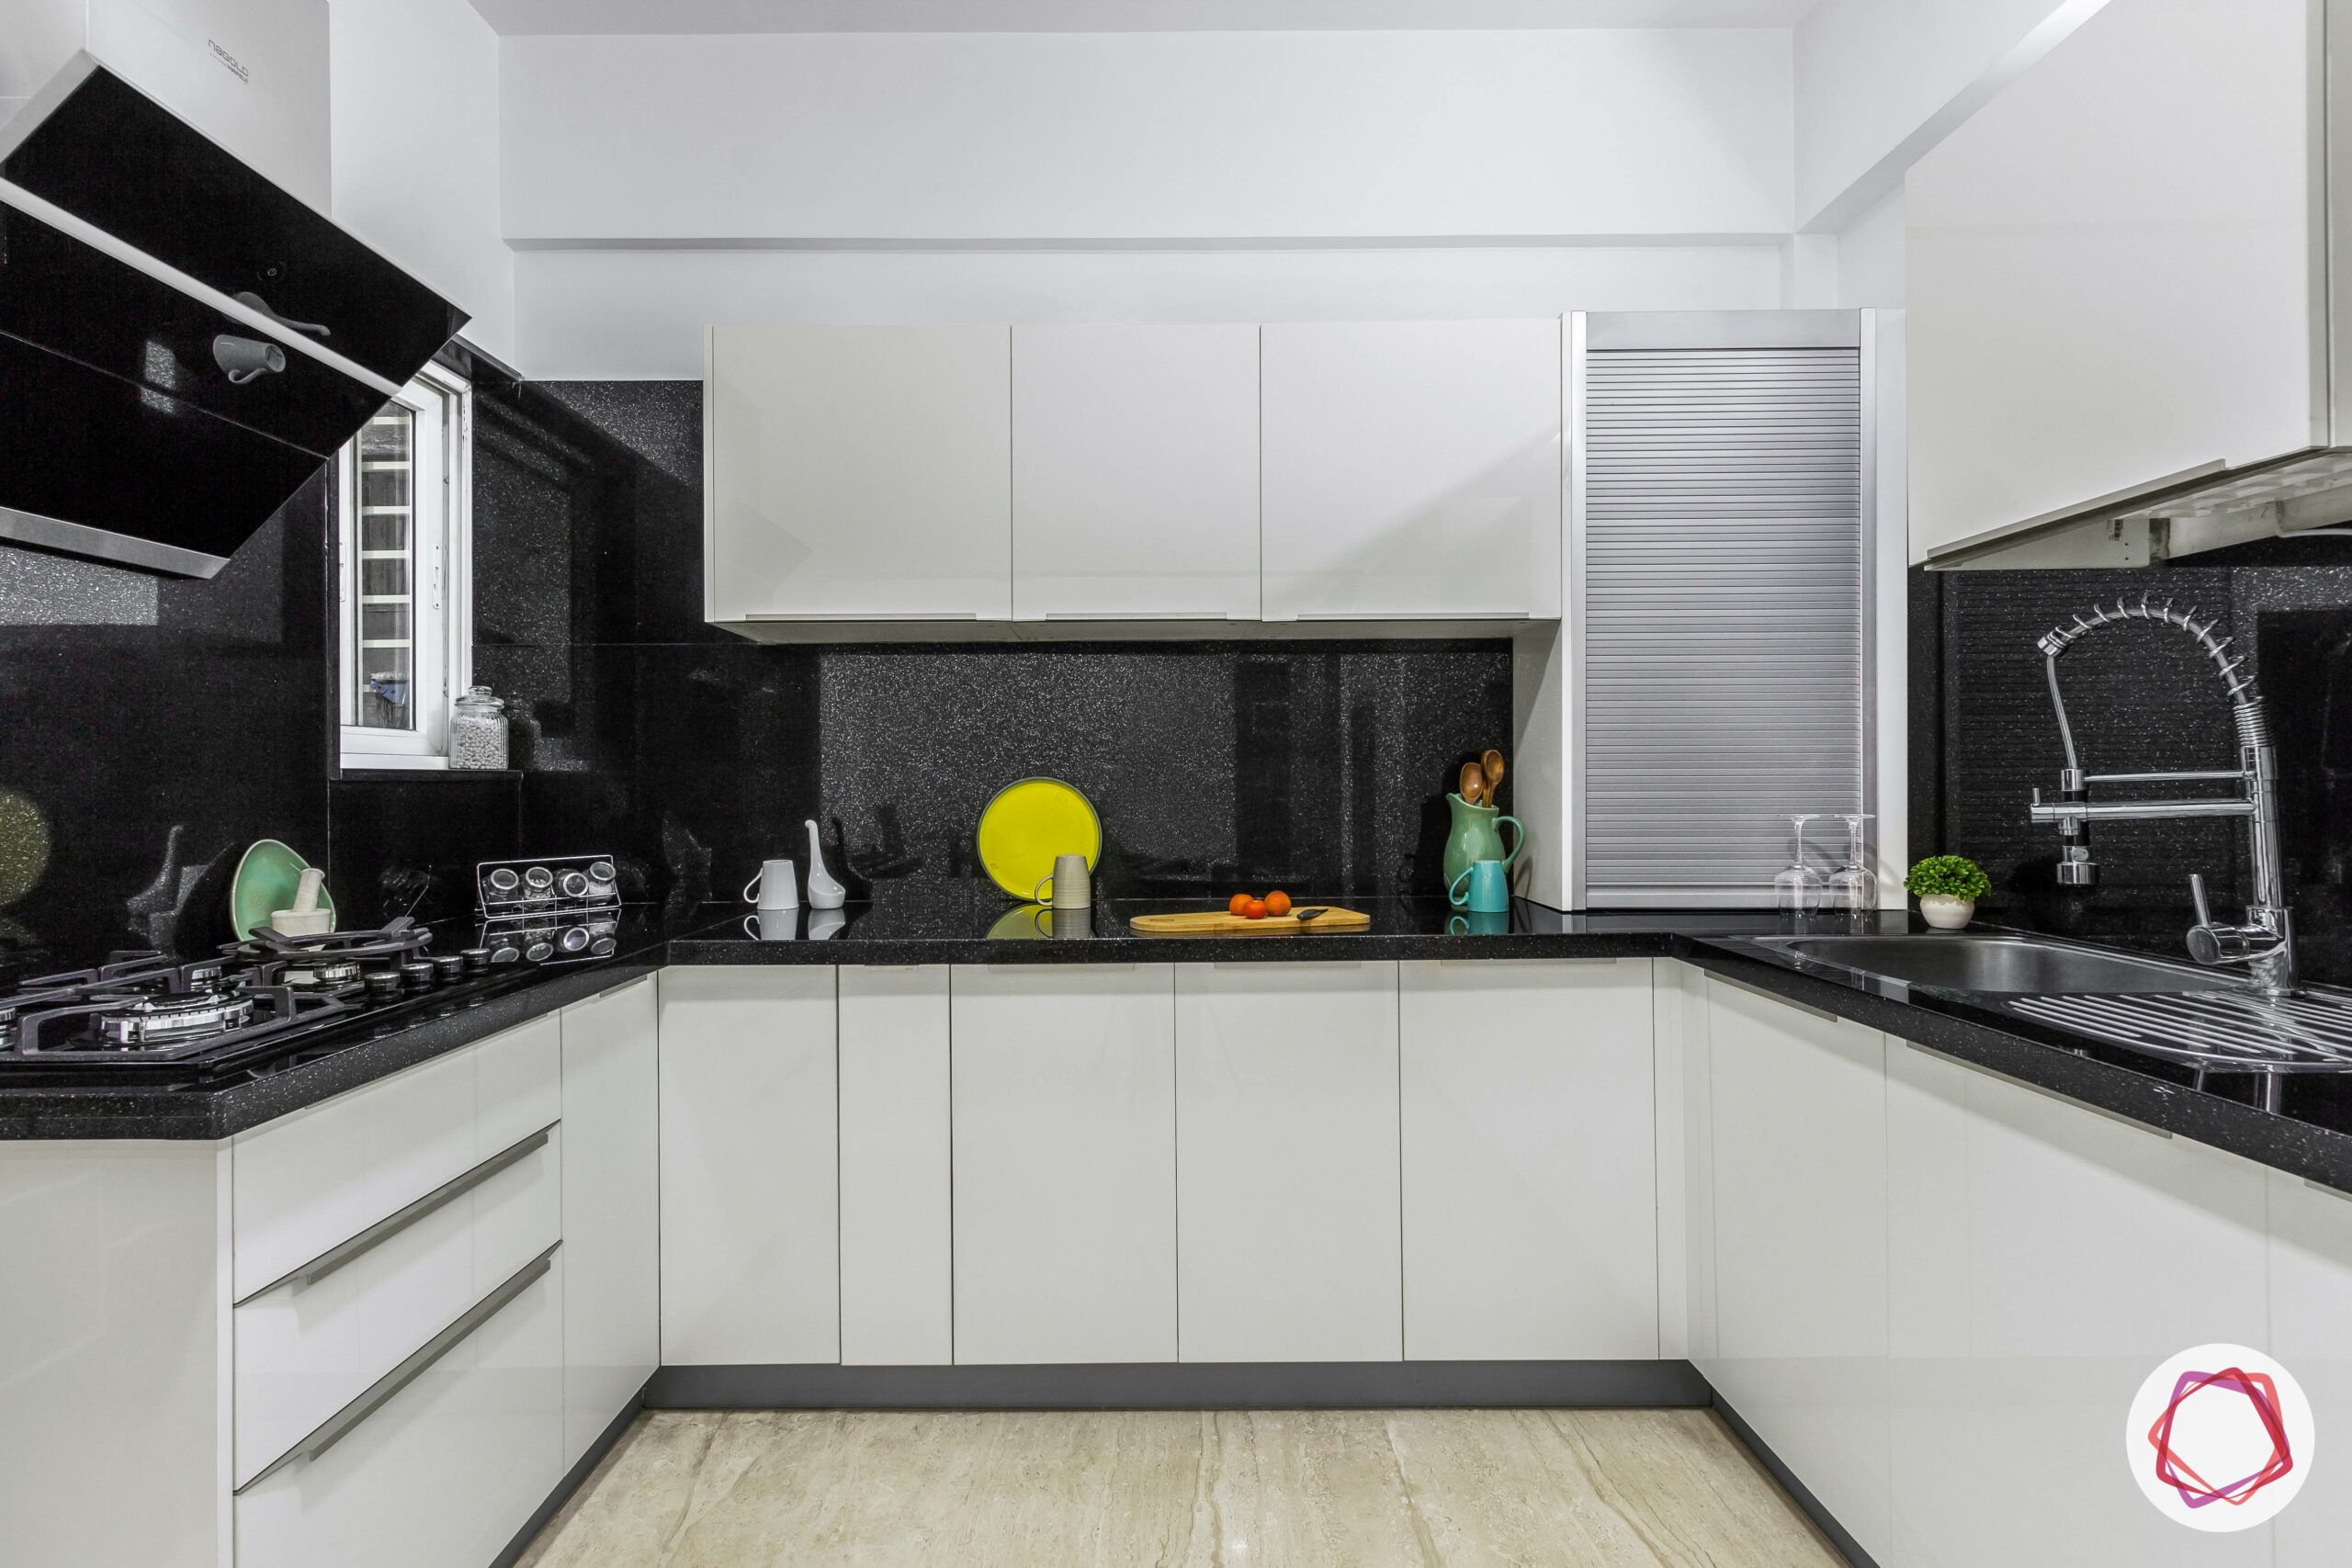 bangalore-home-design-kitchen-black-white